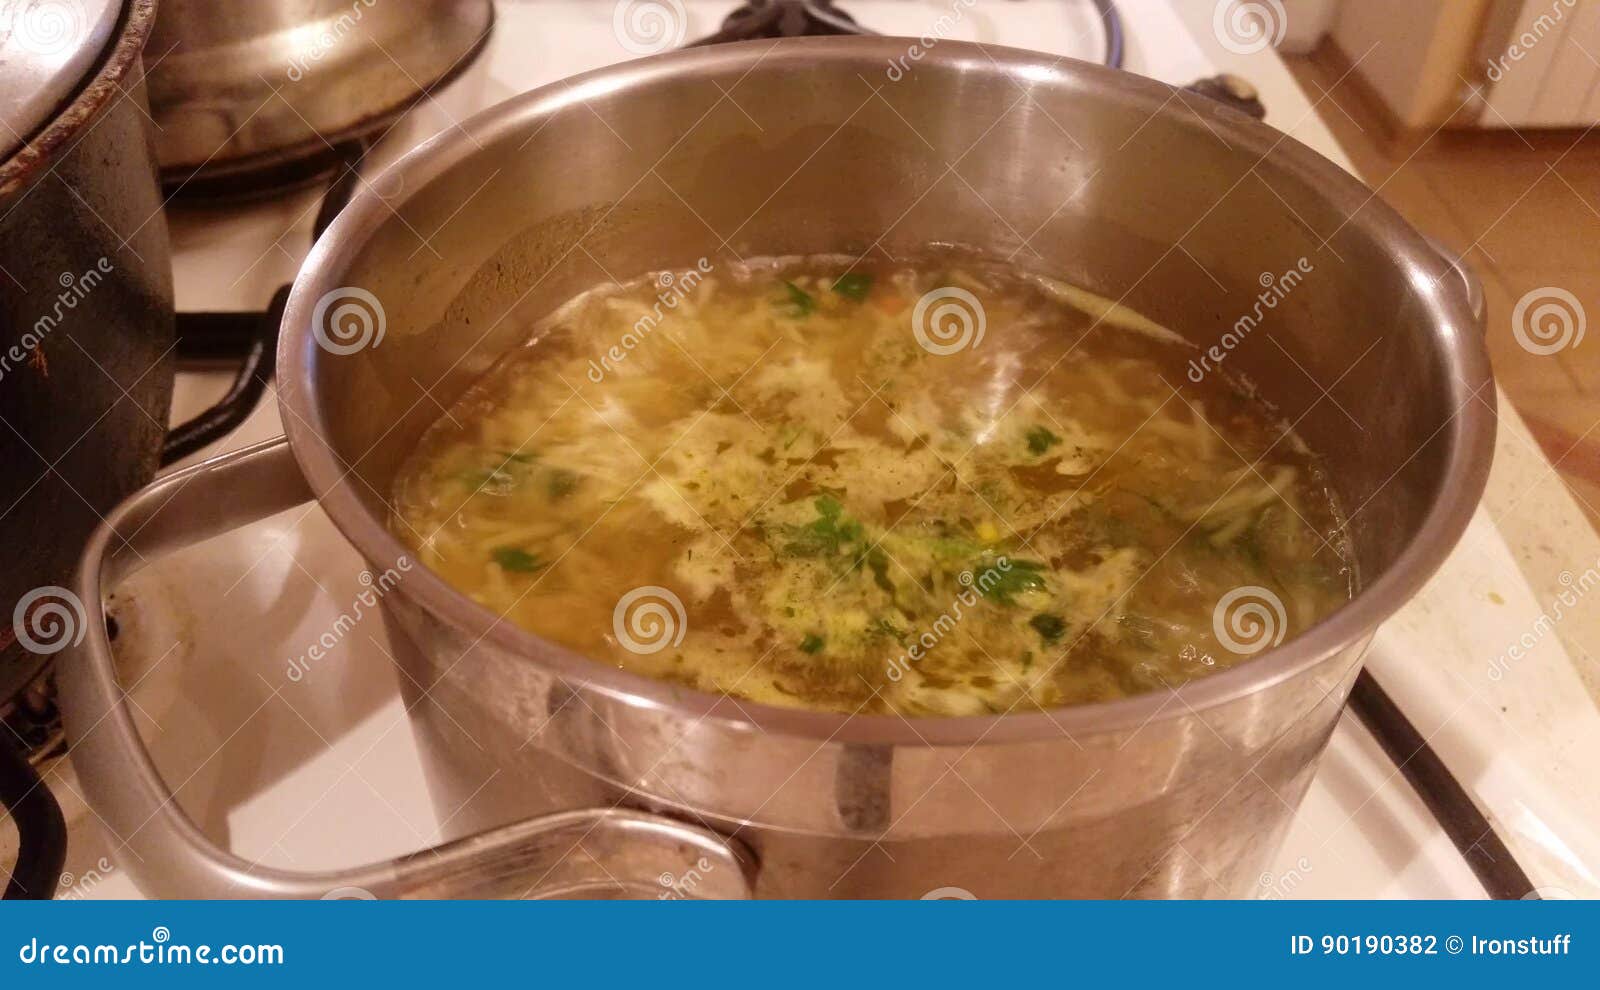 Суп кипит. Кипящий суп. Суп кипящий в кастрюле. Выкипевший суп. Выкипание супа из кастрюли.